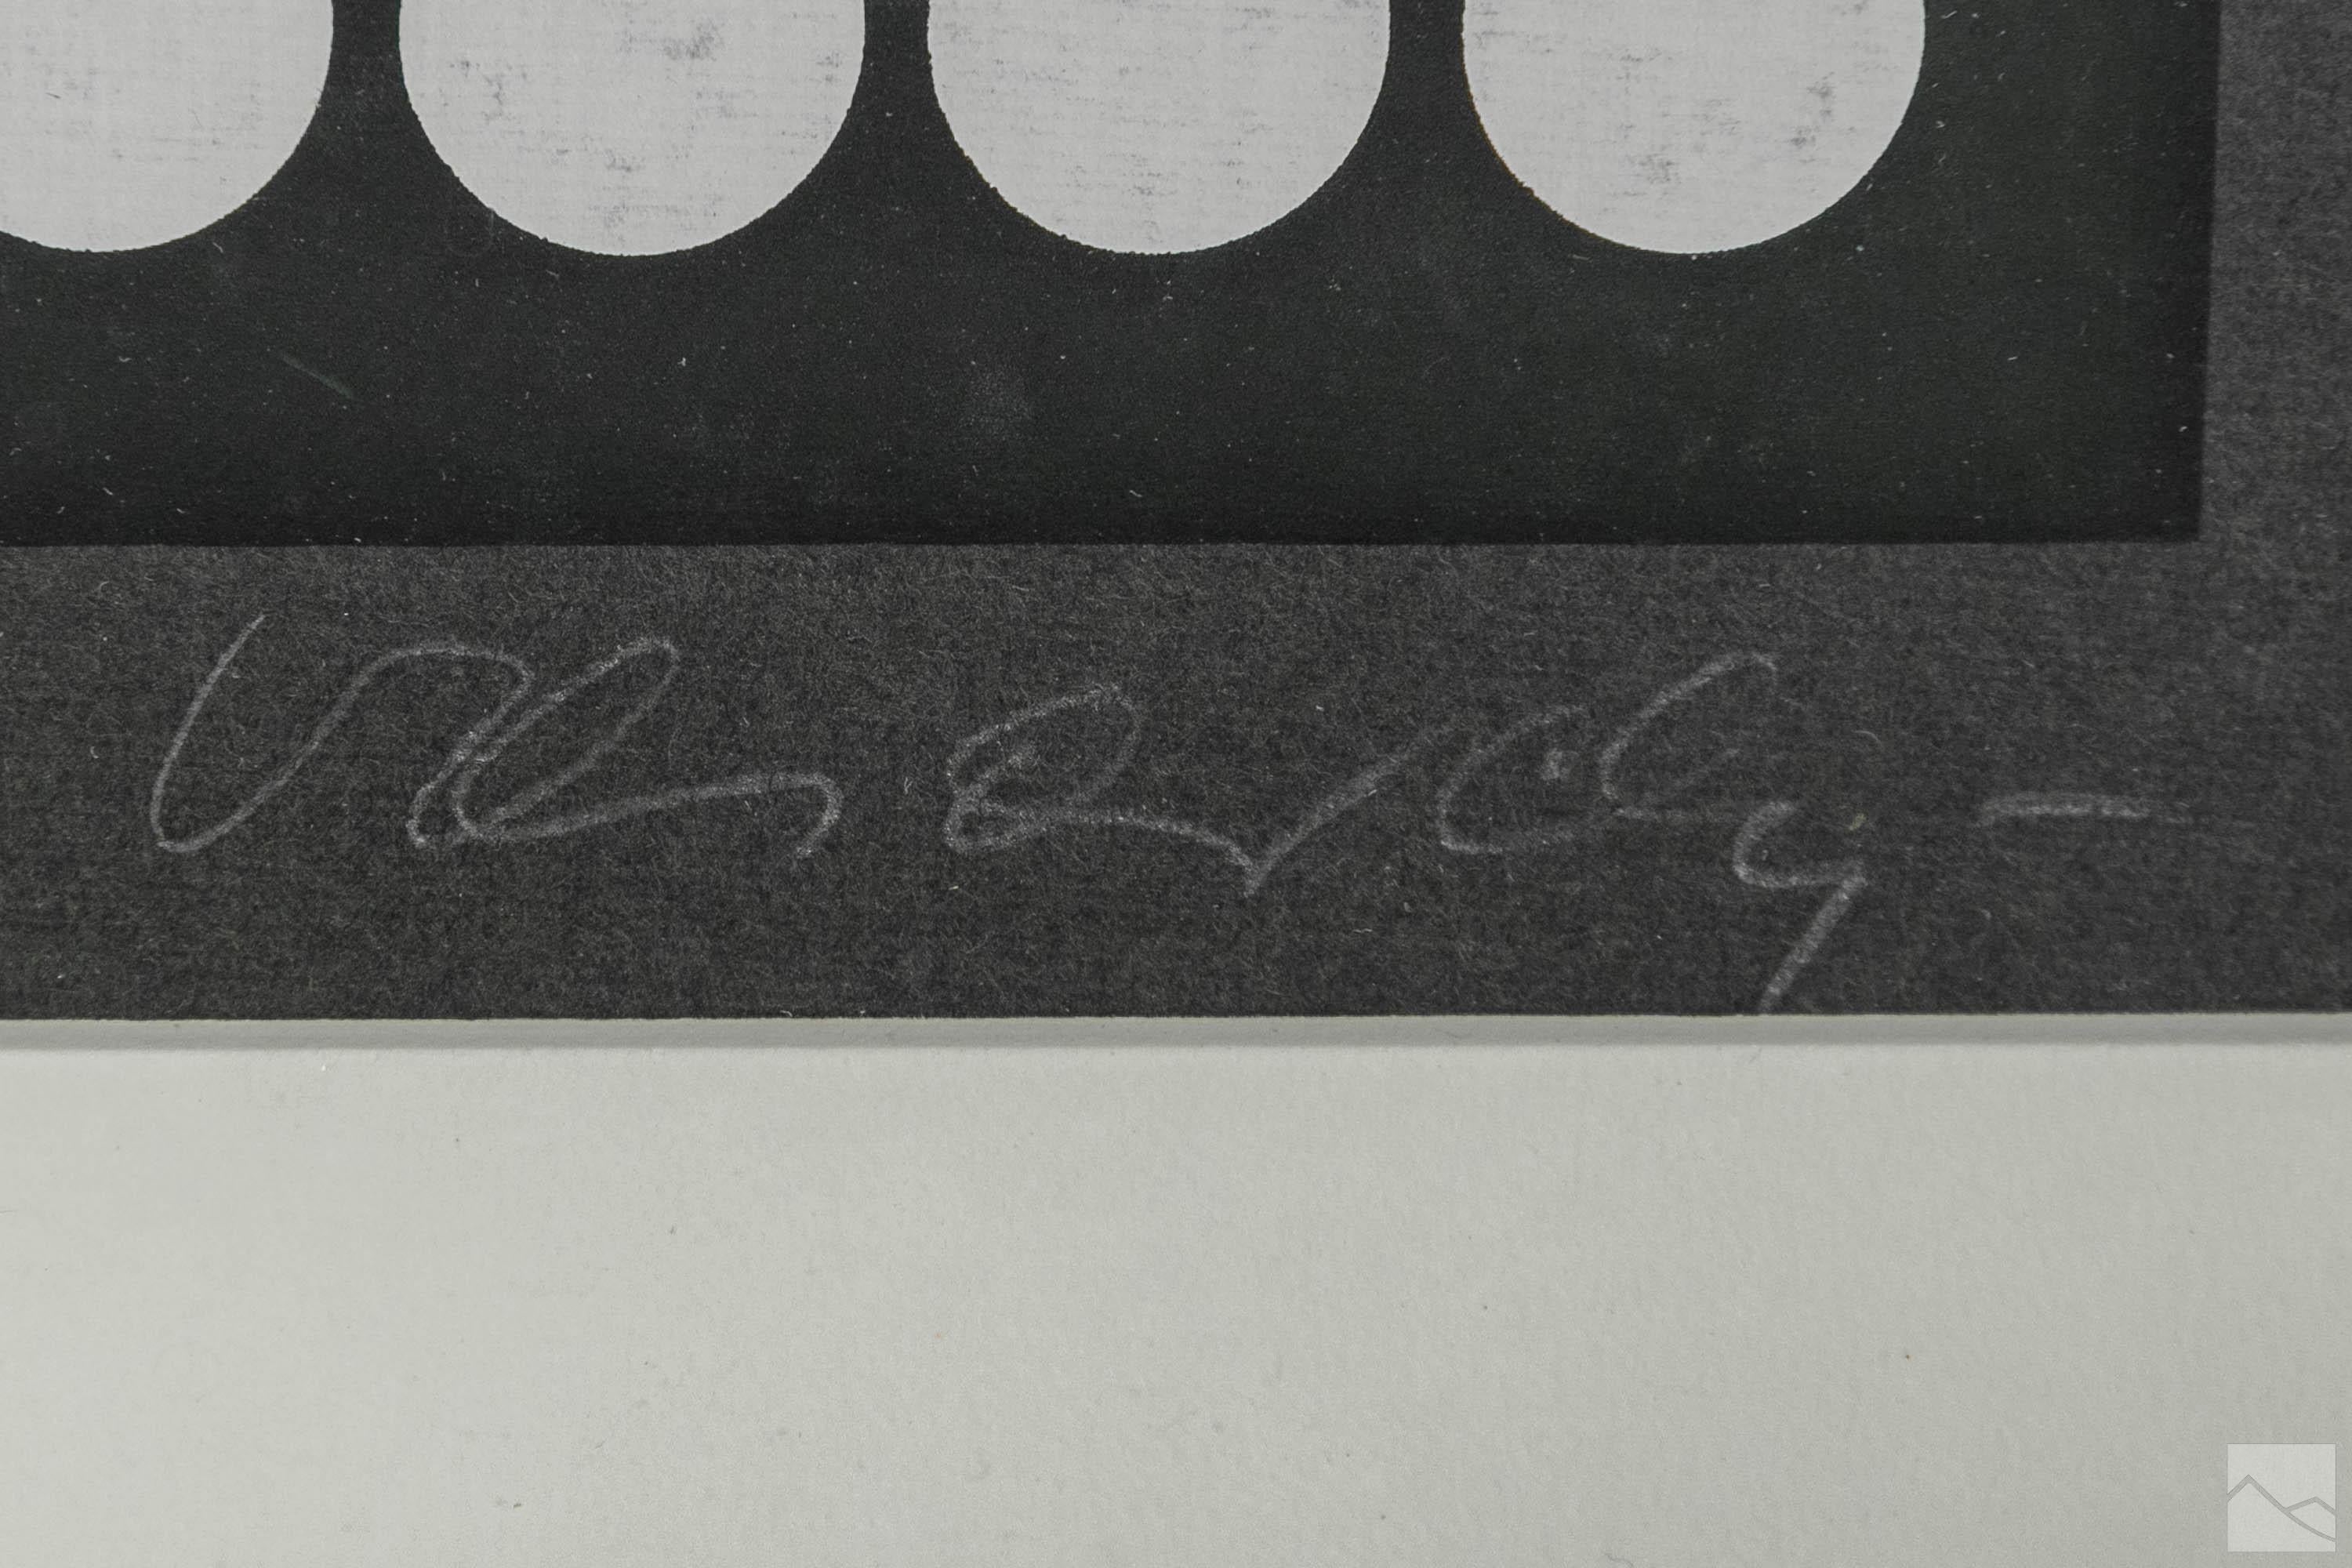 Signierter und nummerierter Siebdruck in limitierter Auflage auf Papier

Serie Betelgeuse, 